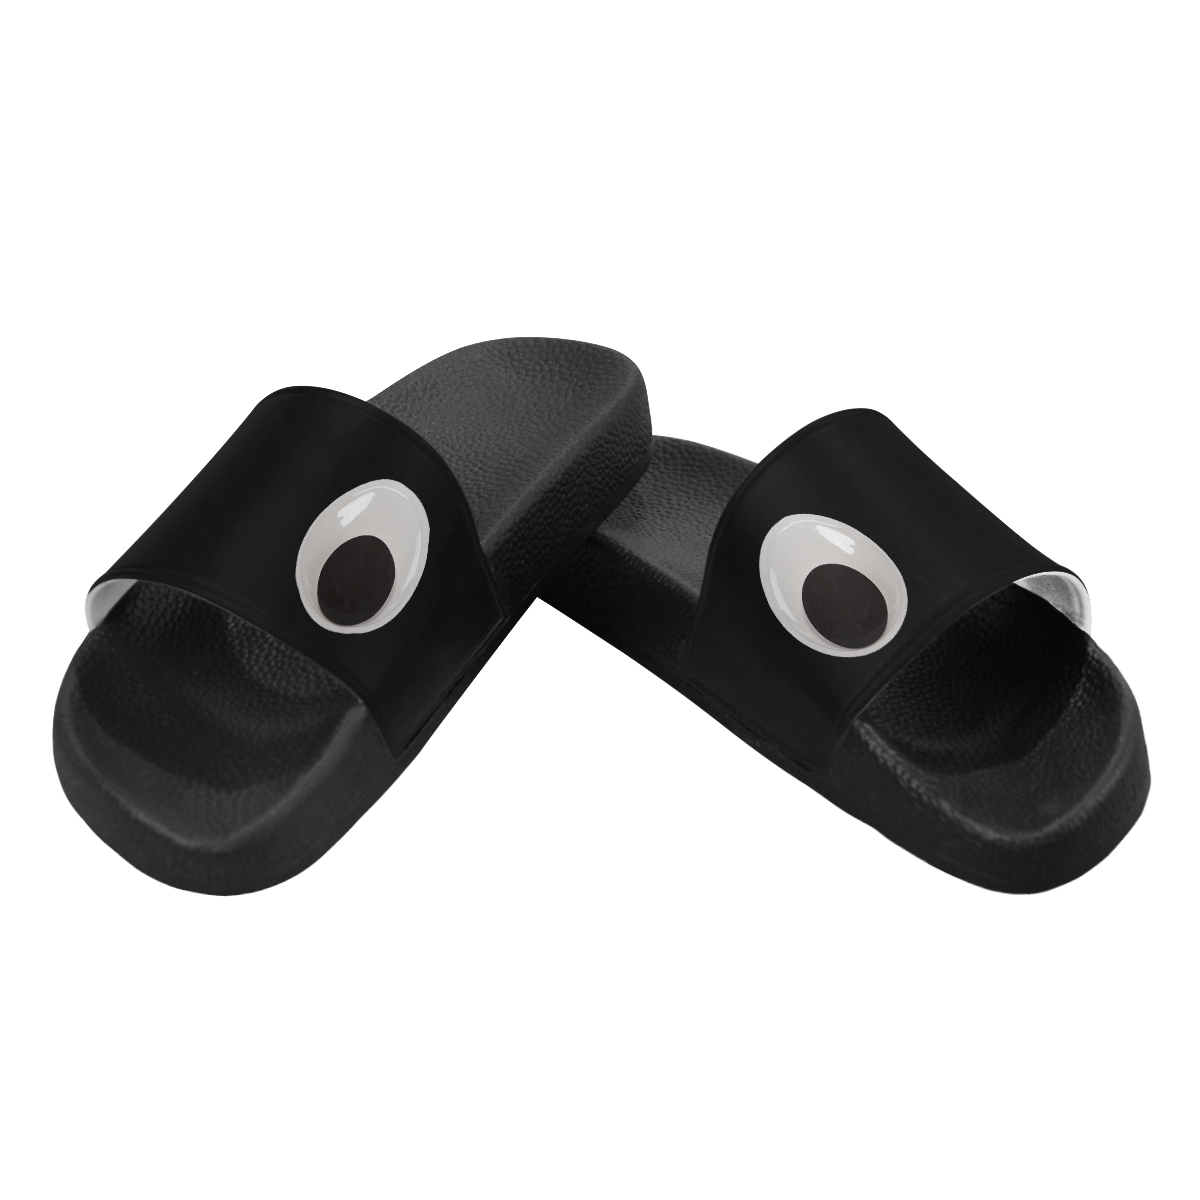 Funny Googly Eyes Women's Slide Sandals (Model 057)